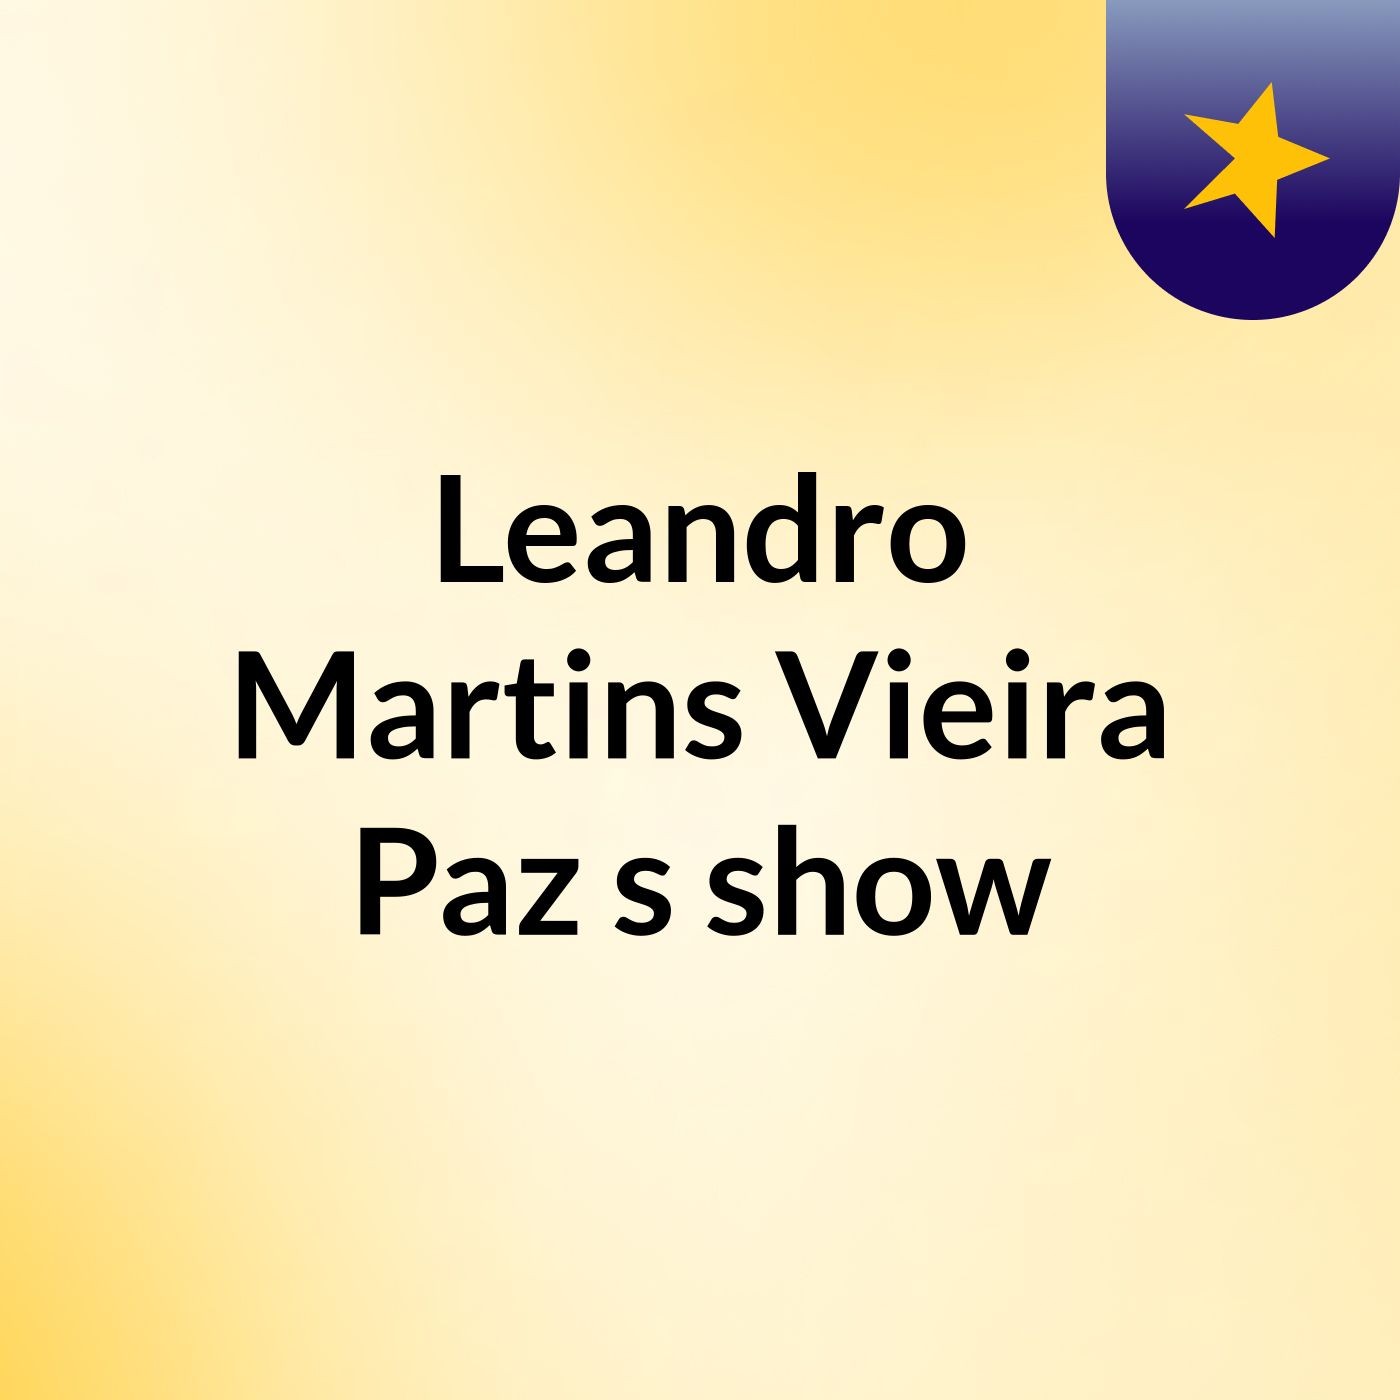 Leandro Martins Vieira Paz's show